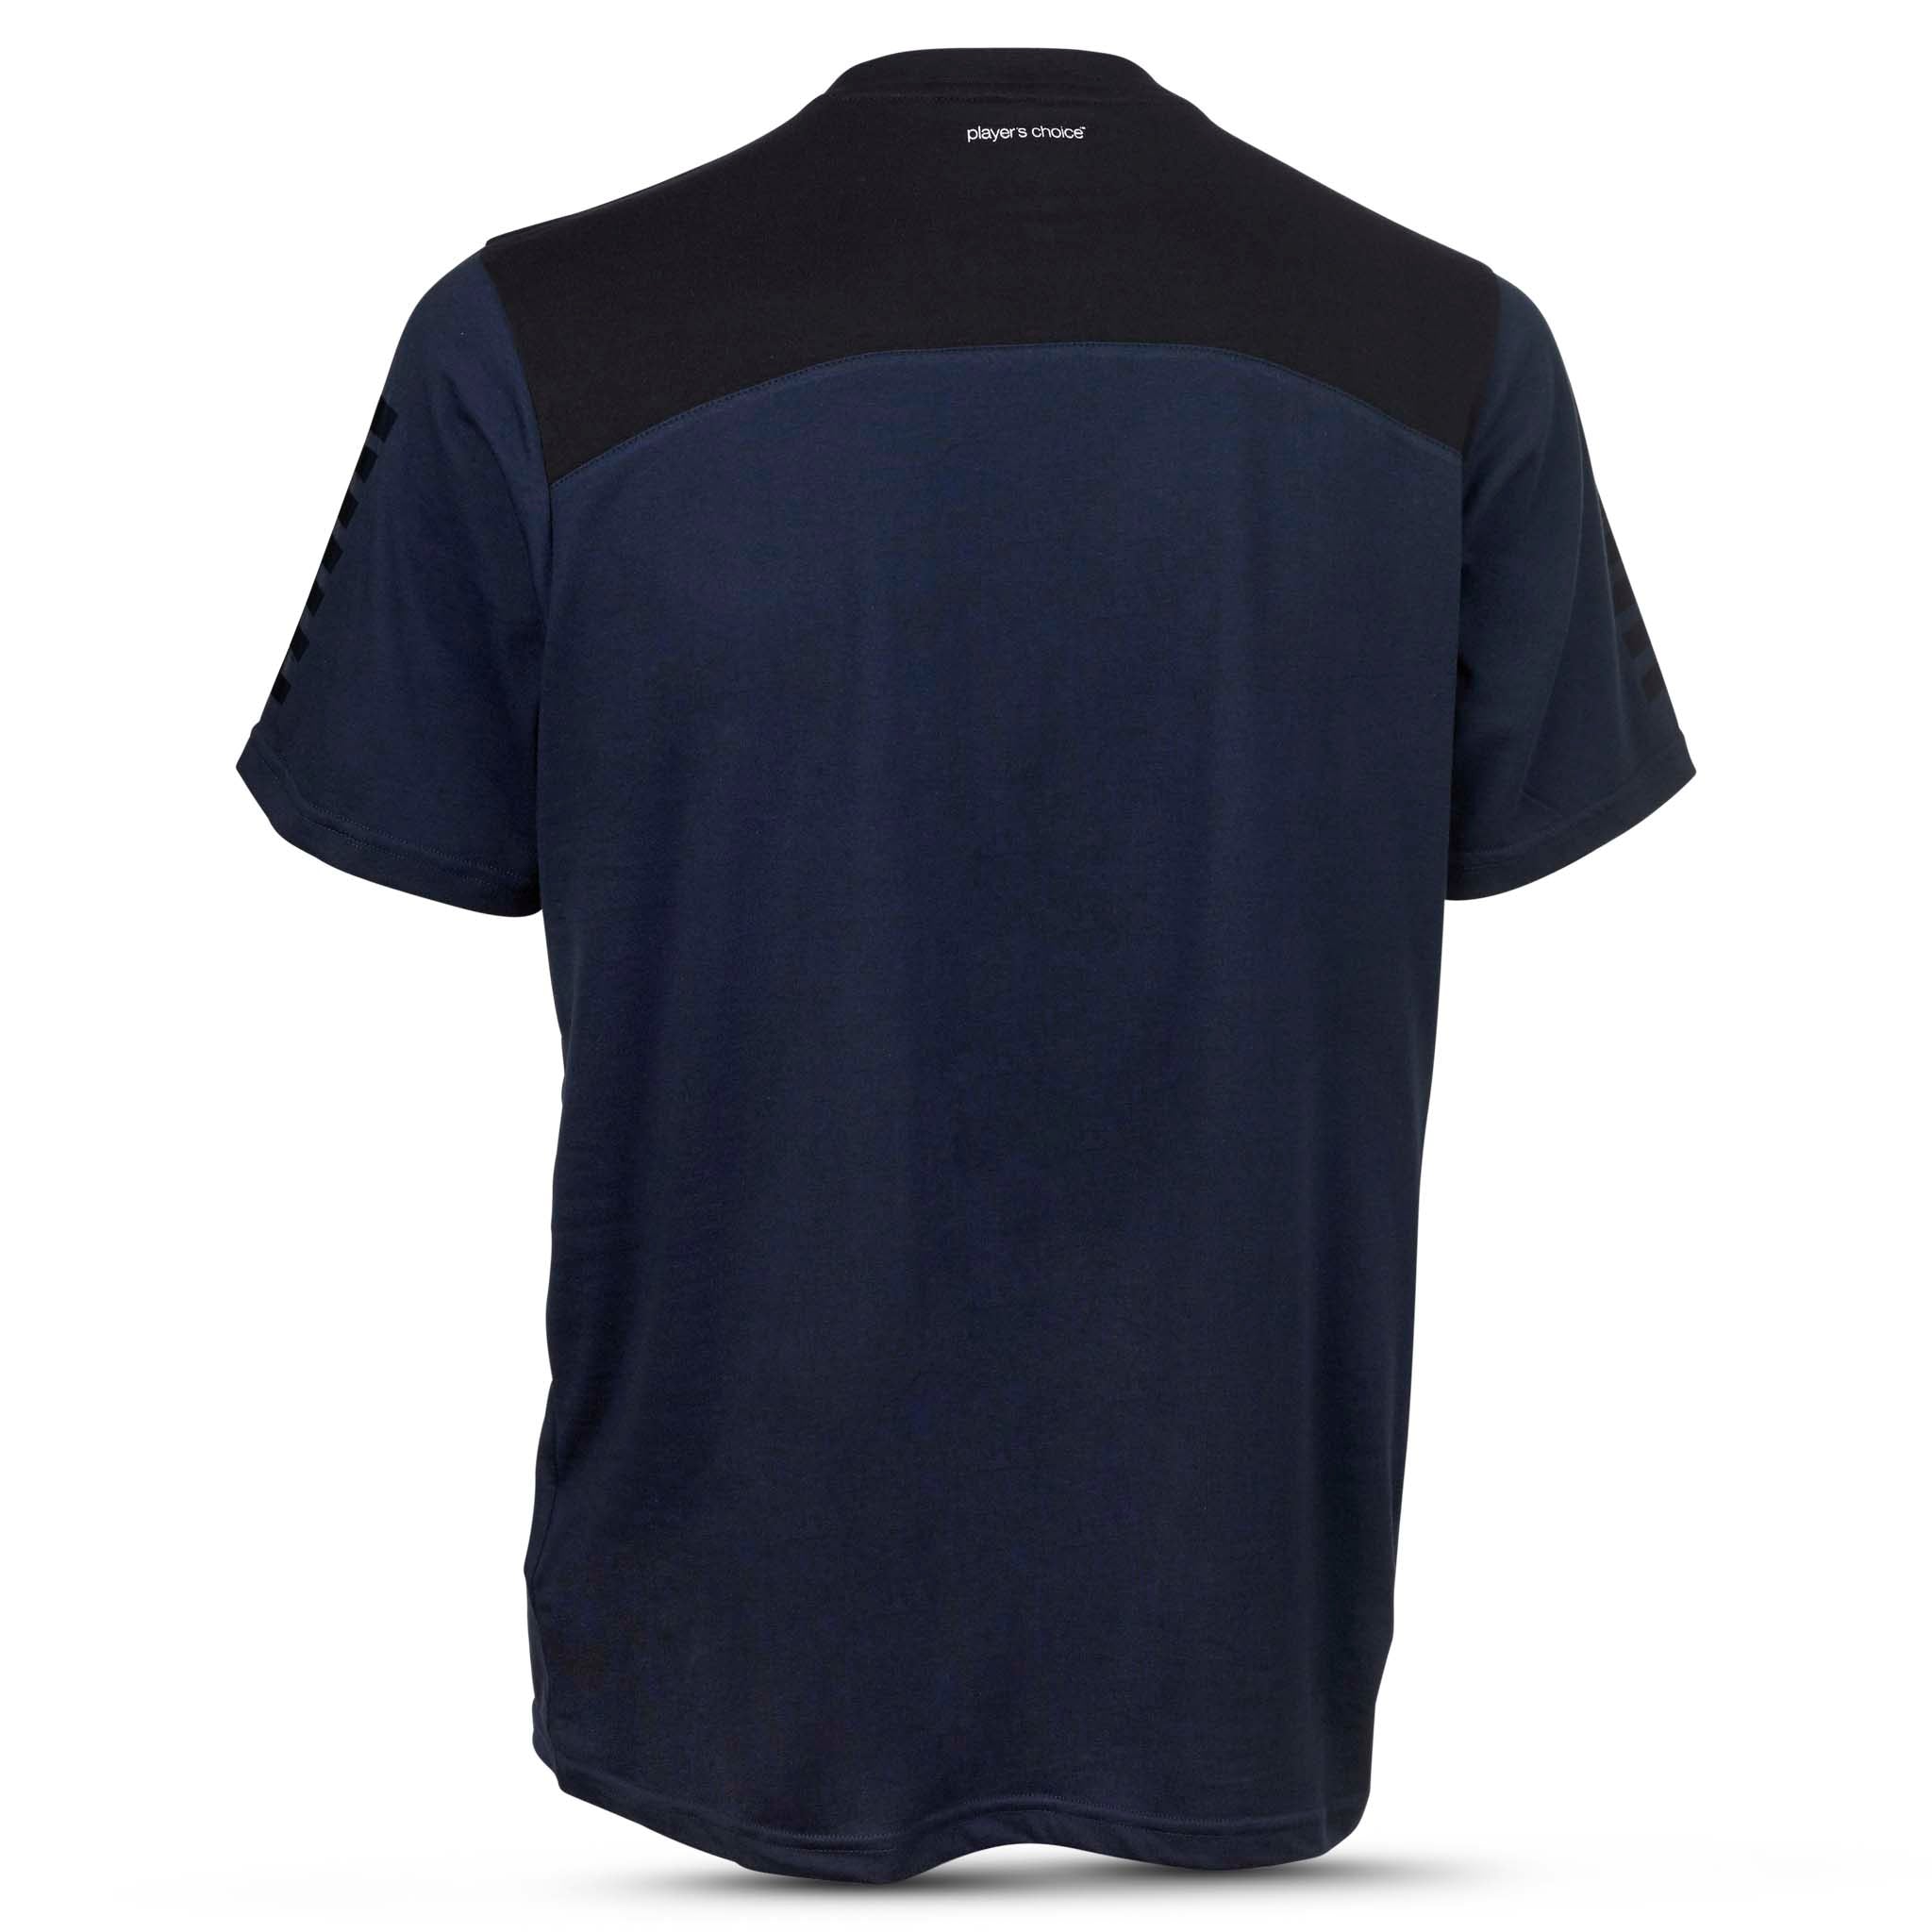 Oxford T-shirt #färg_navy/svart #färg_navy/svart